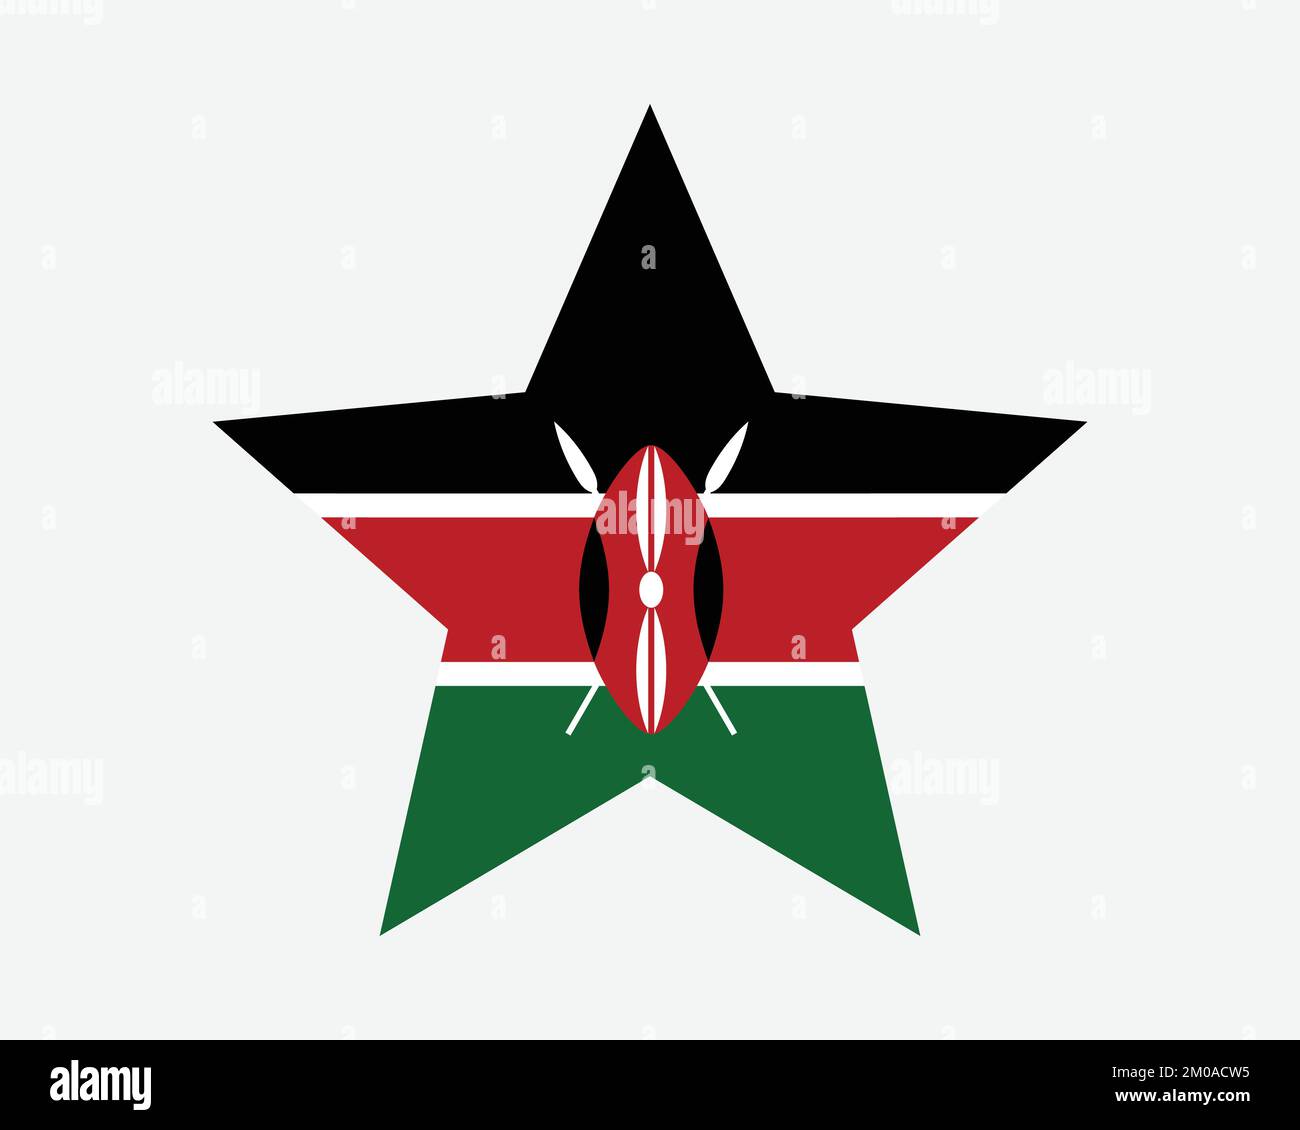 Bandiera Kenia Star. Bandiera keniota a forma di stella. Country National Banner icona simbolo Vector Flat Illustrazione grafica Illustrazione Vettoriale